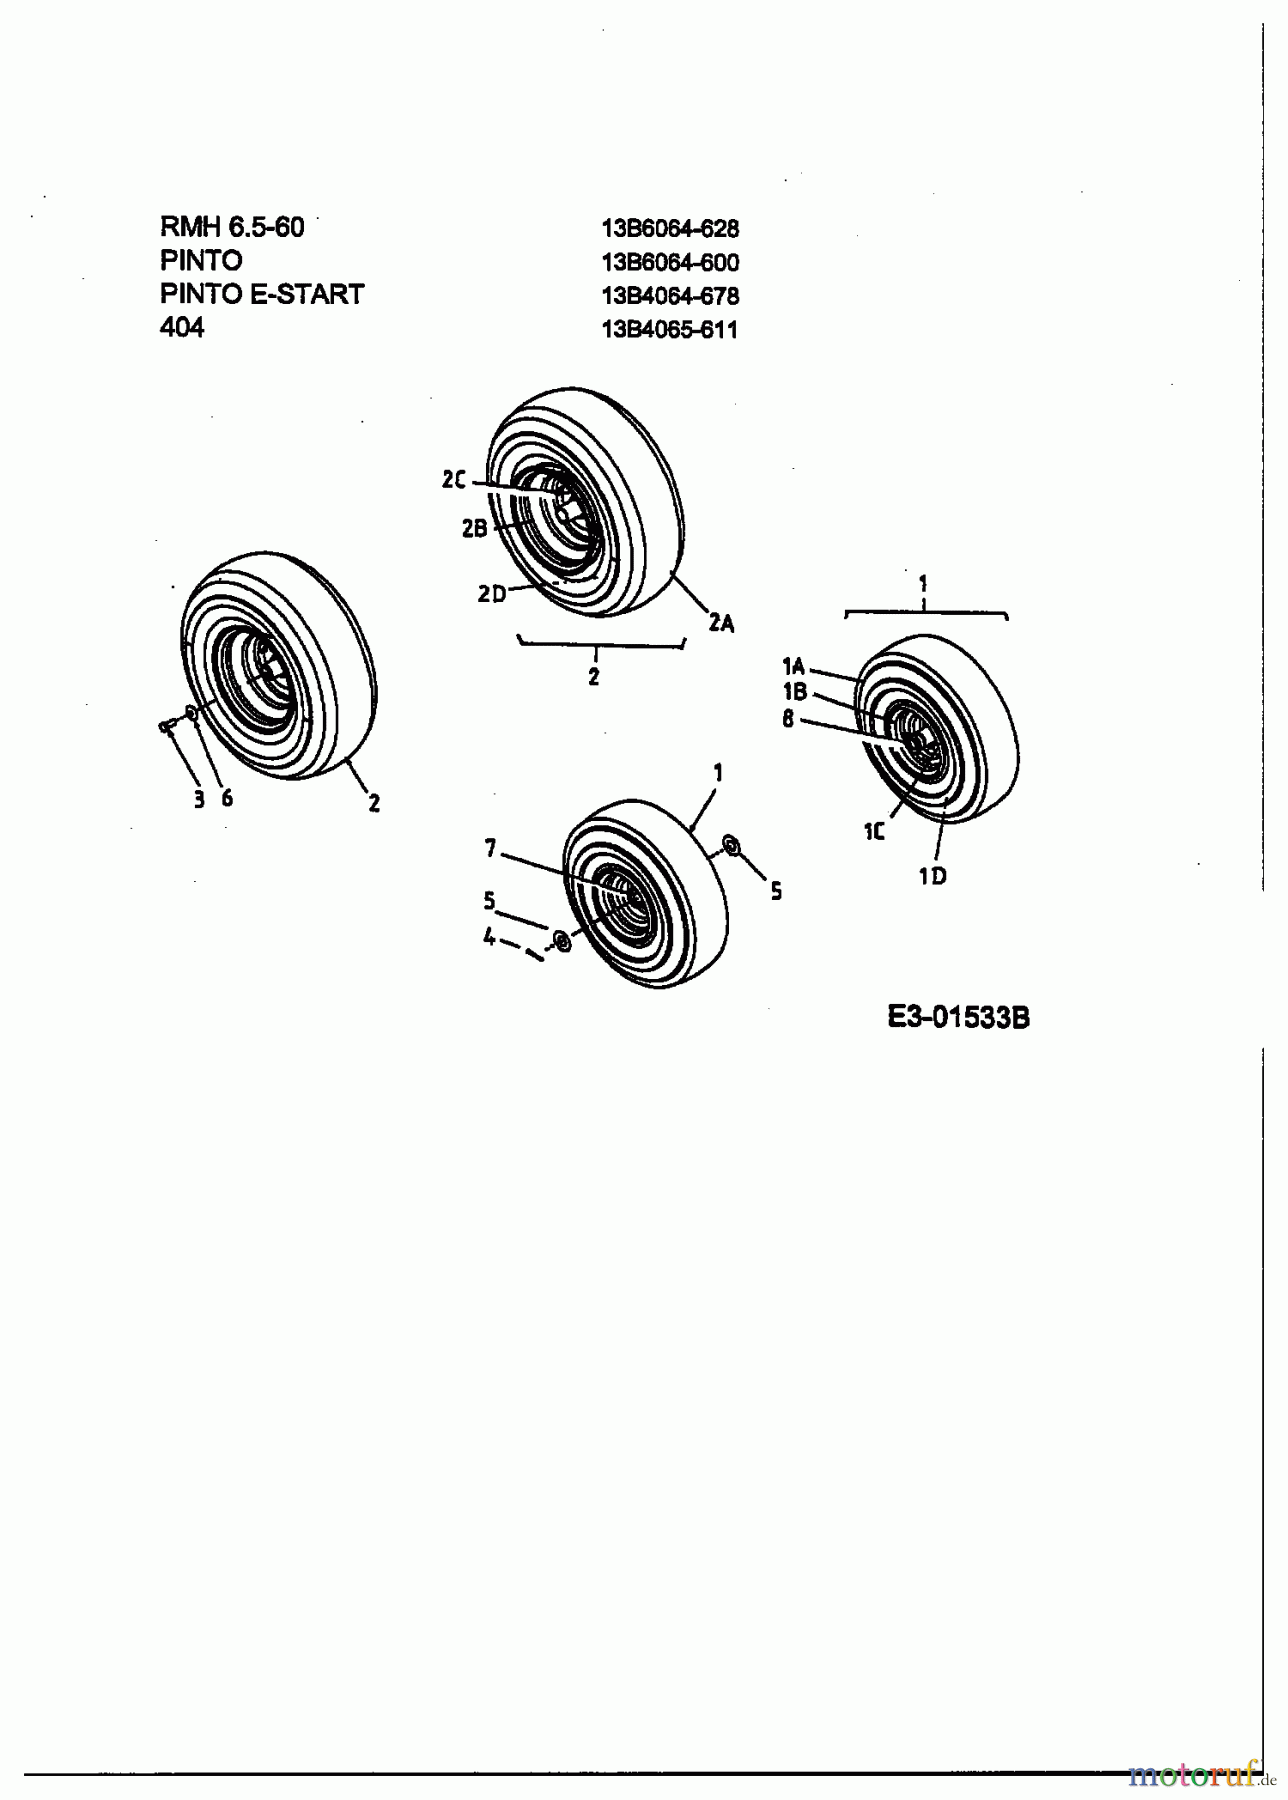  Lawnflite Rasentraktoren 404 13B4065-611  (2003) Räder